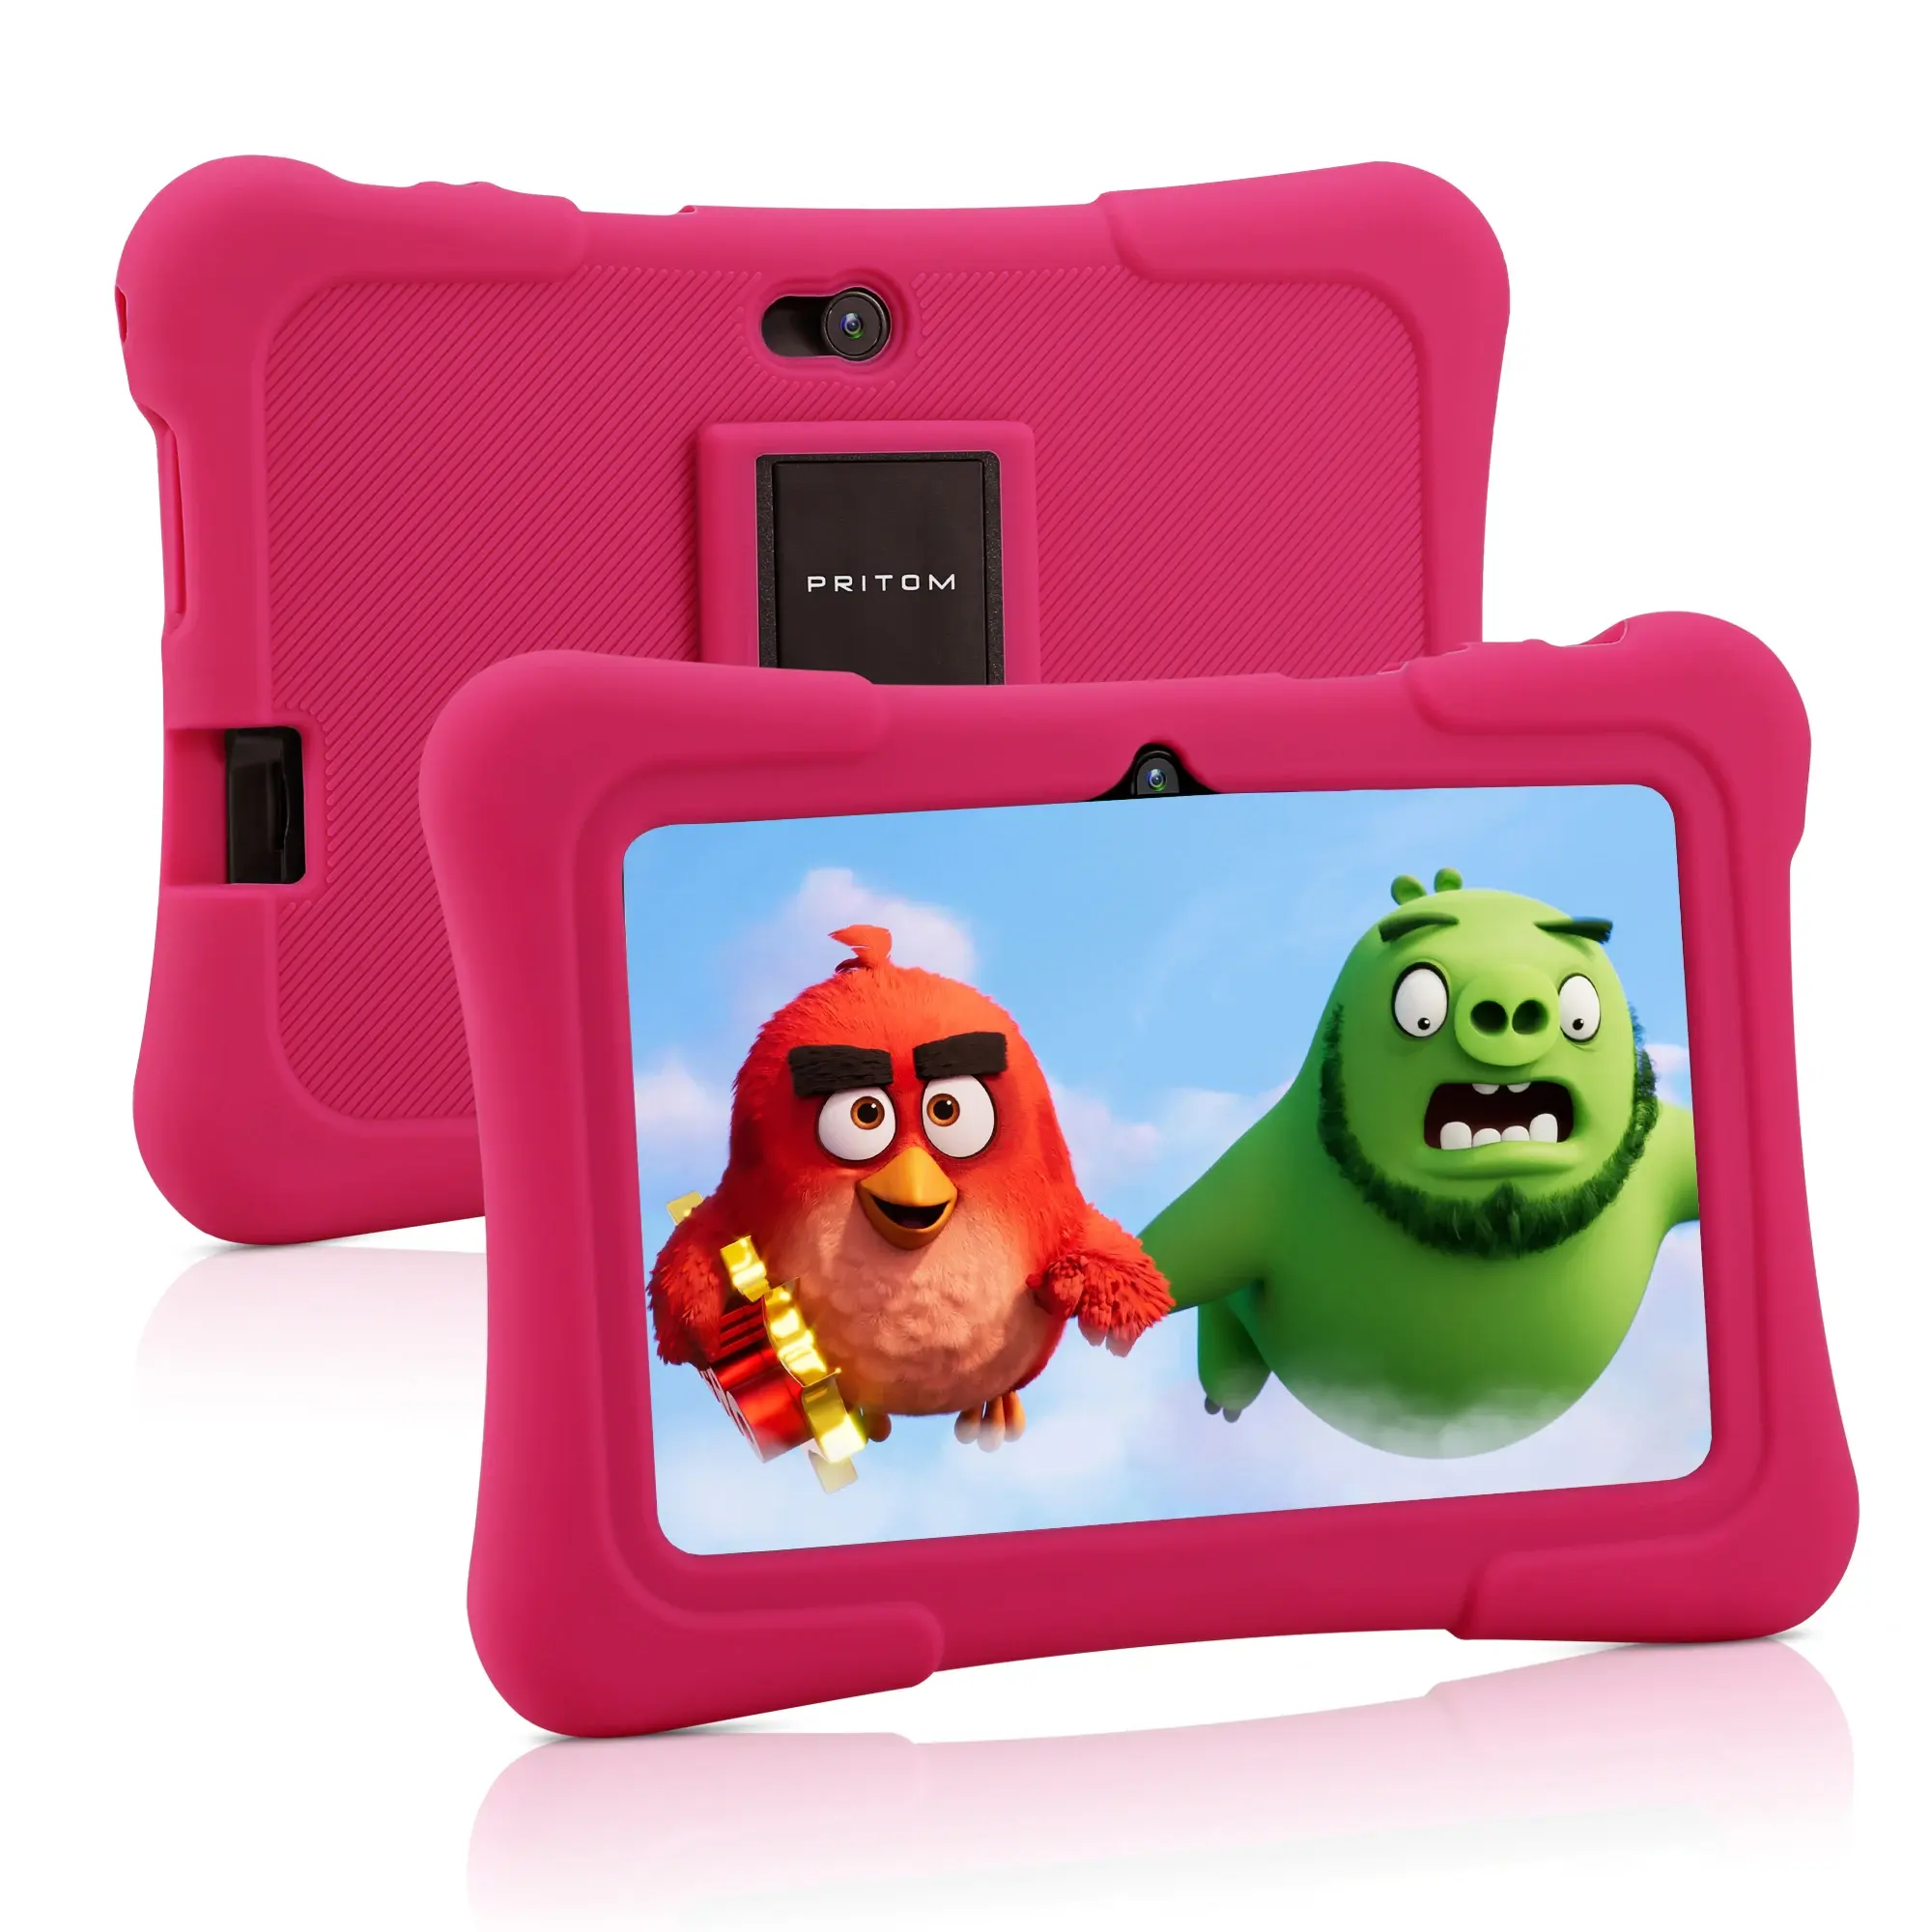 Pritom Baby Tablet Android K7 neues Modell 7 Zoll HD Quad Core 32GB ROM Android 10 besten Geschenk Tablet PC für Jungen und Mädchen